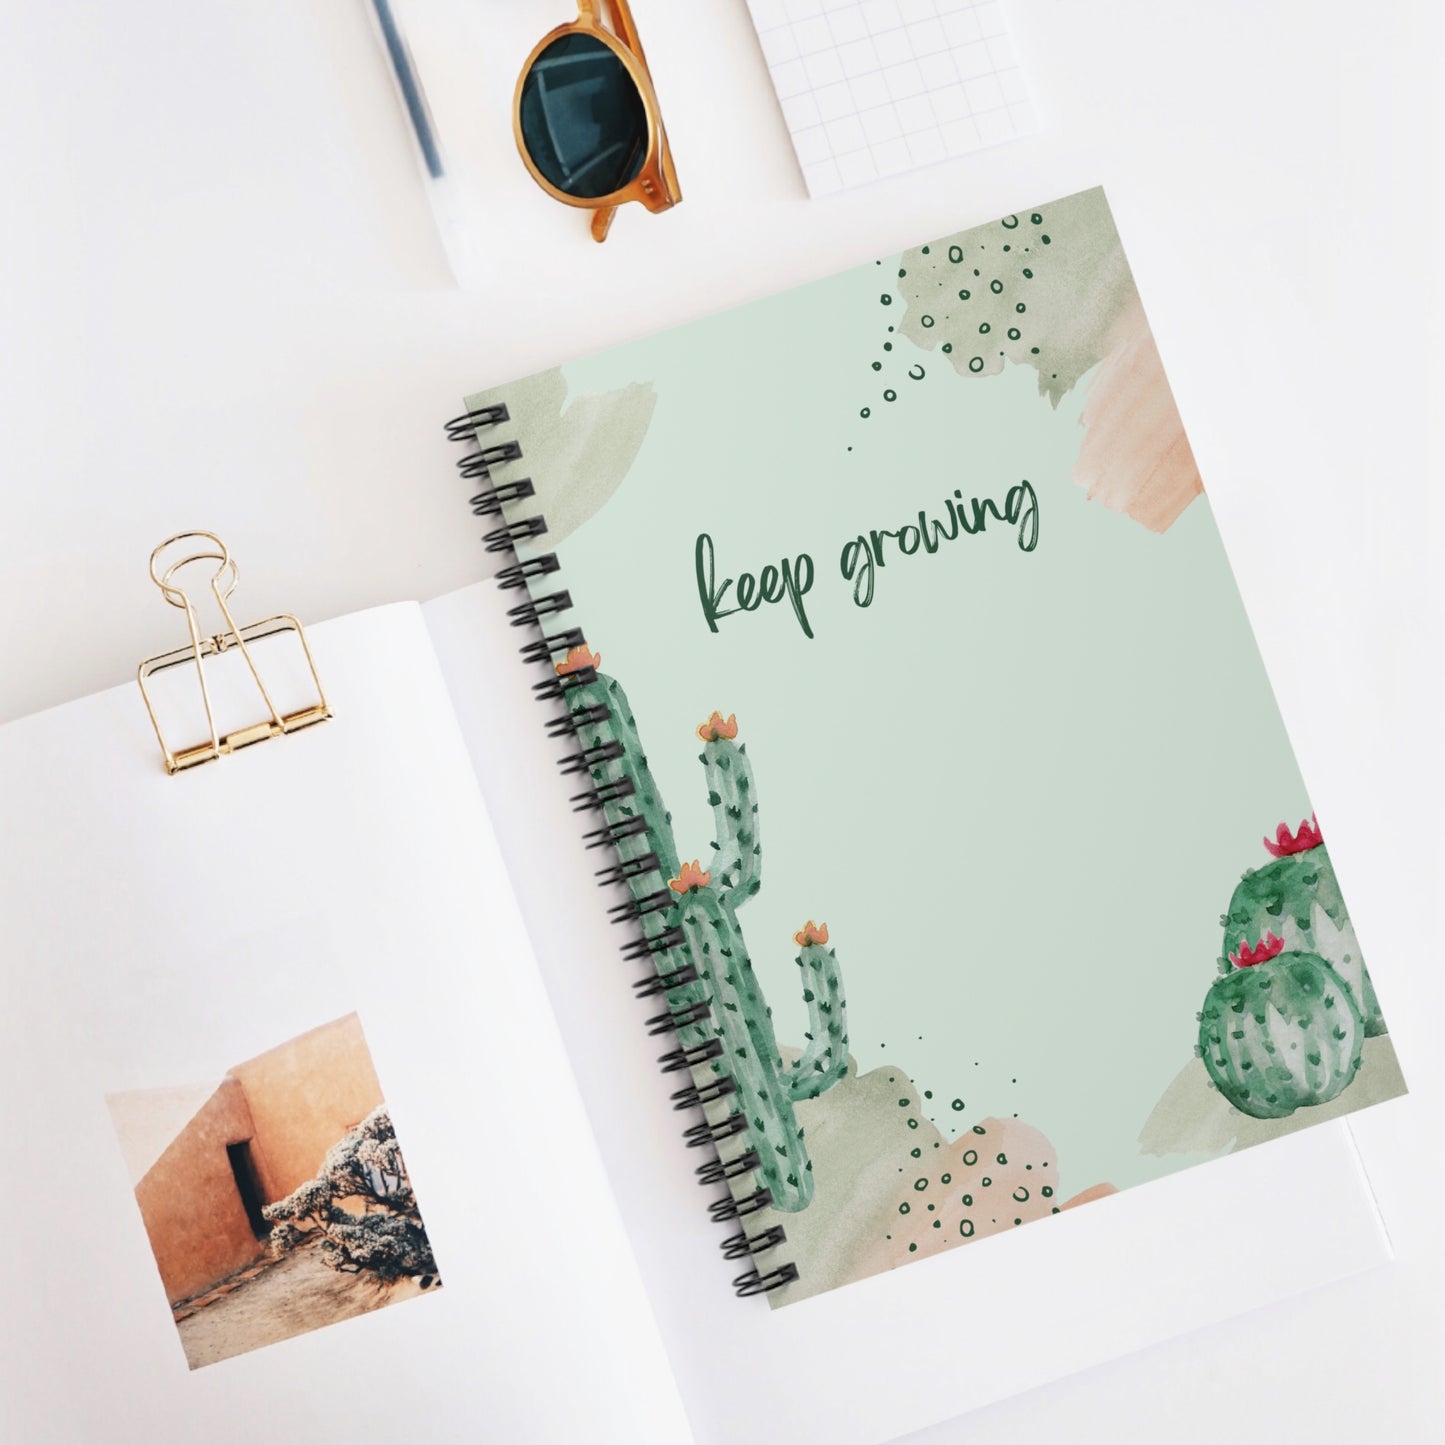 Keep Growing Notebook